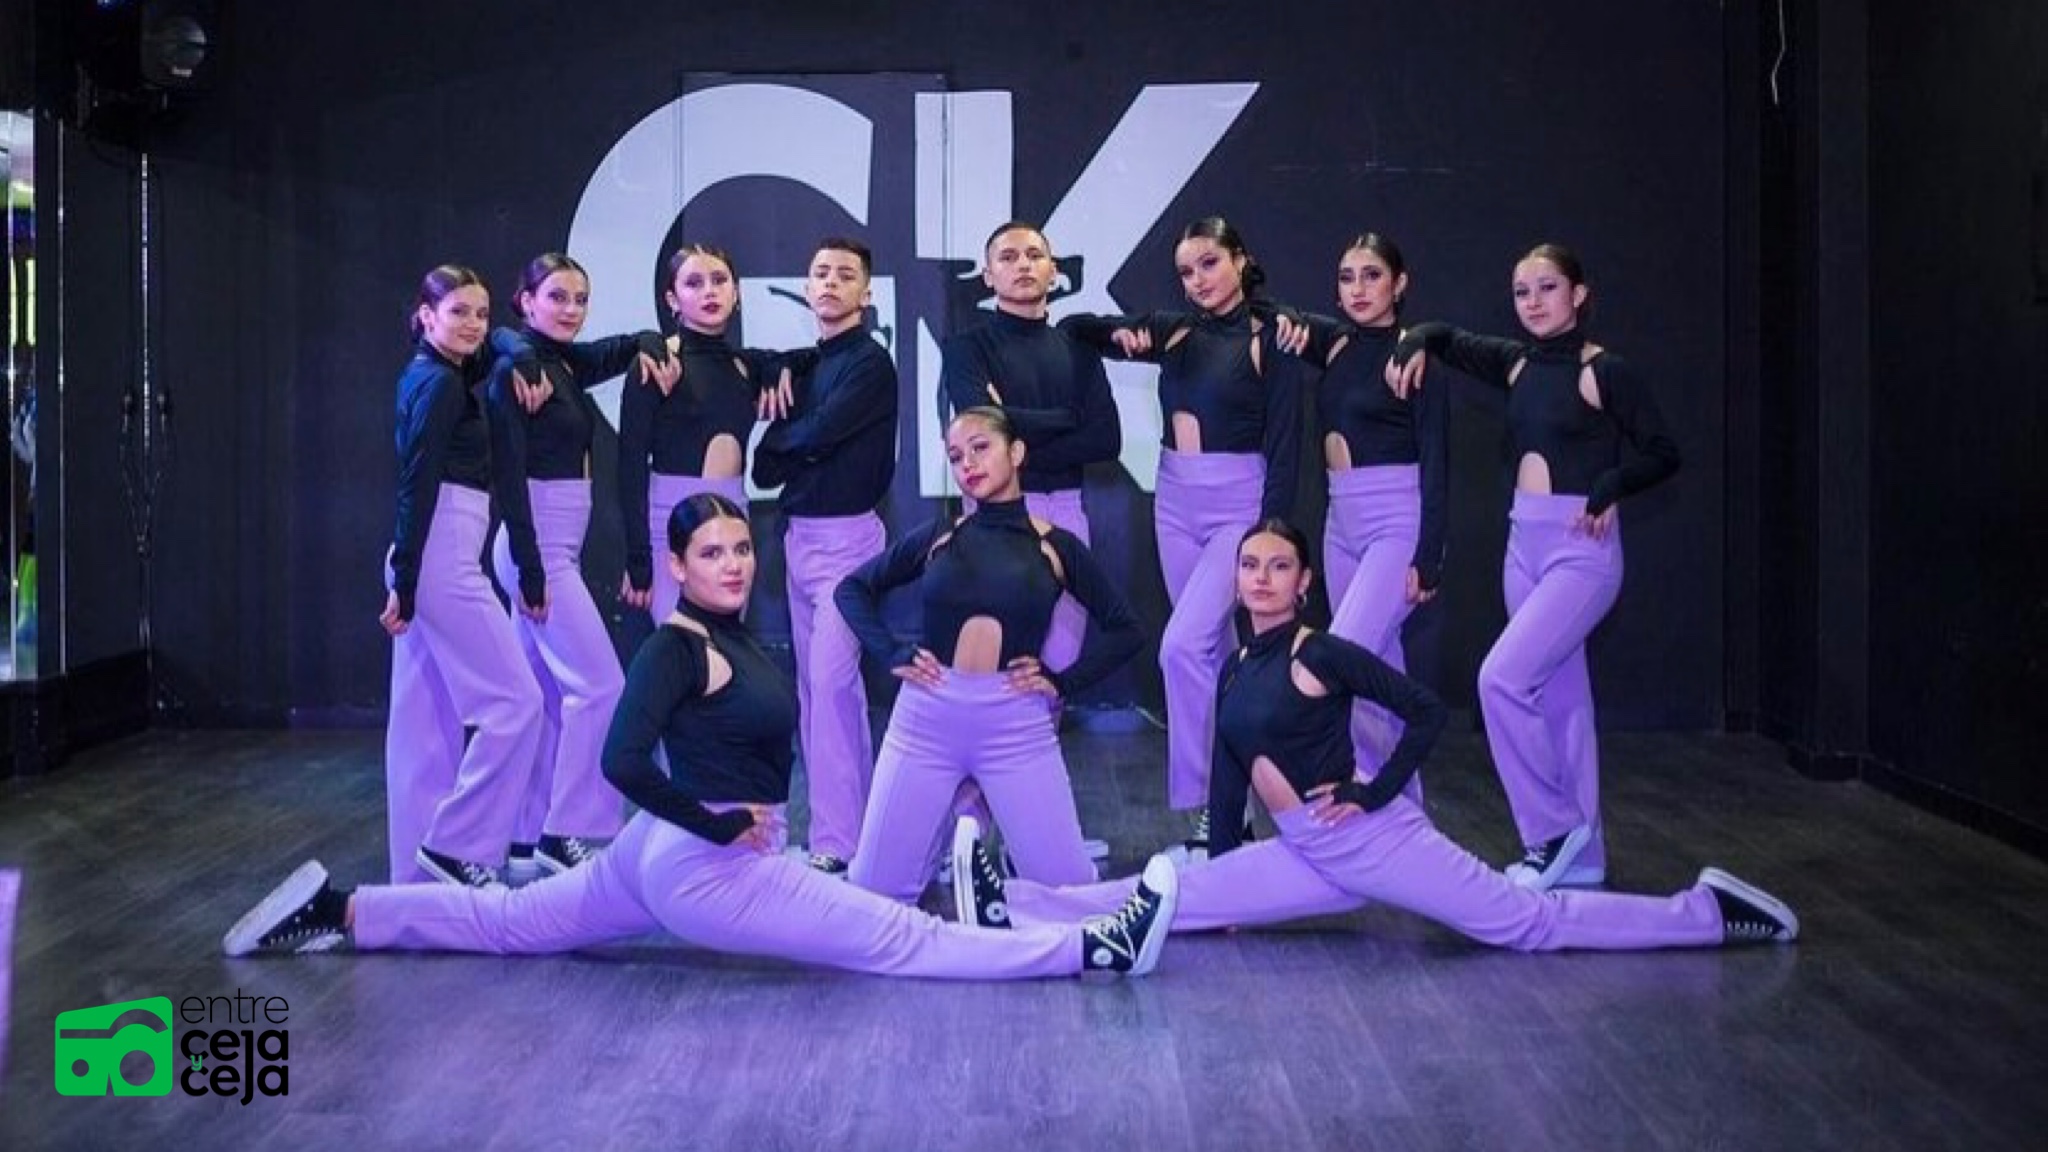 Miembros de academia de baile de Marinilla representarán al país en un concurso internacional